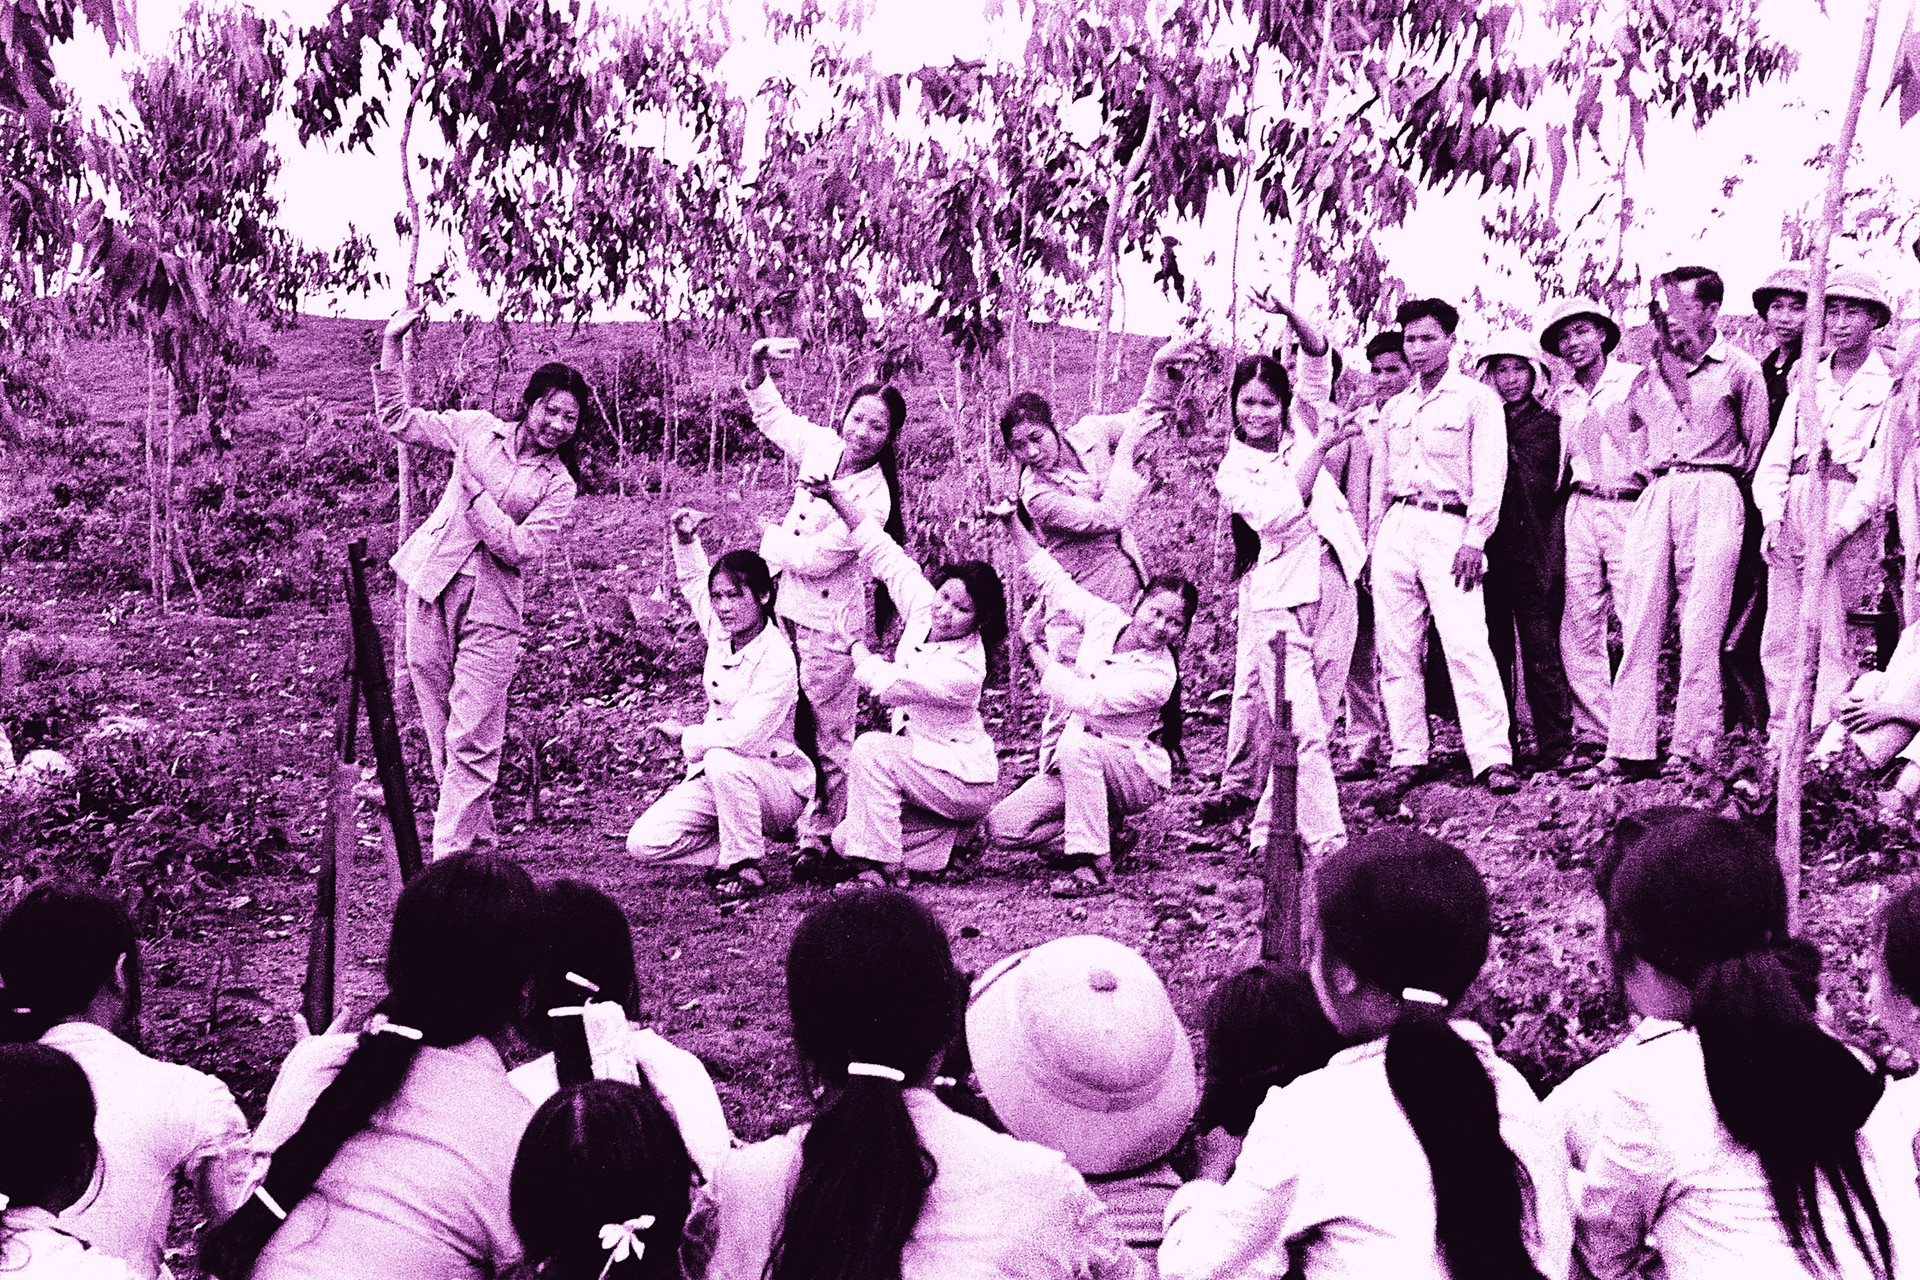 Xúc động hình ảnh khúc tráng ca của tuổi trẻ Việt Nam một thời hào hùng - 16